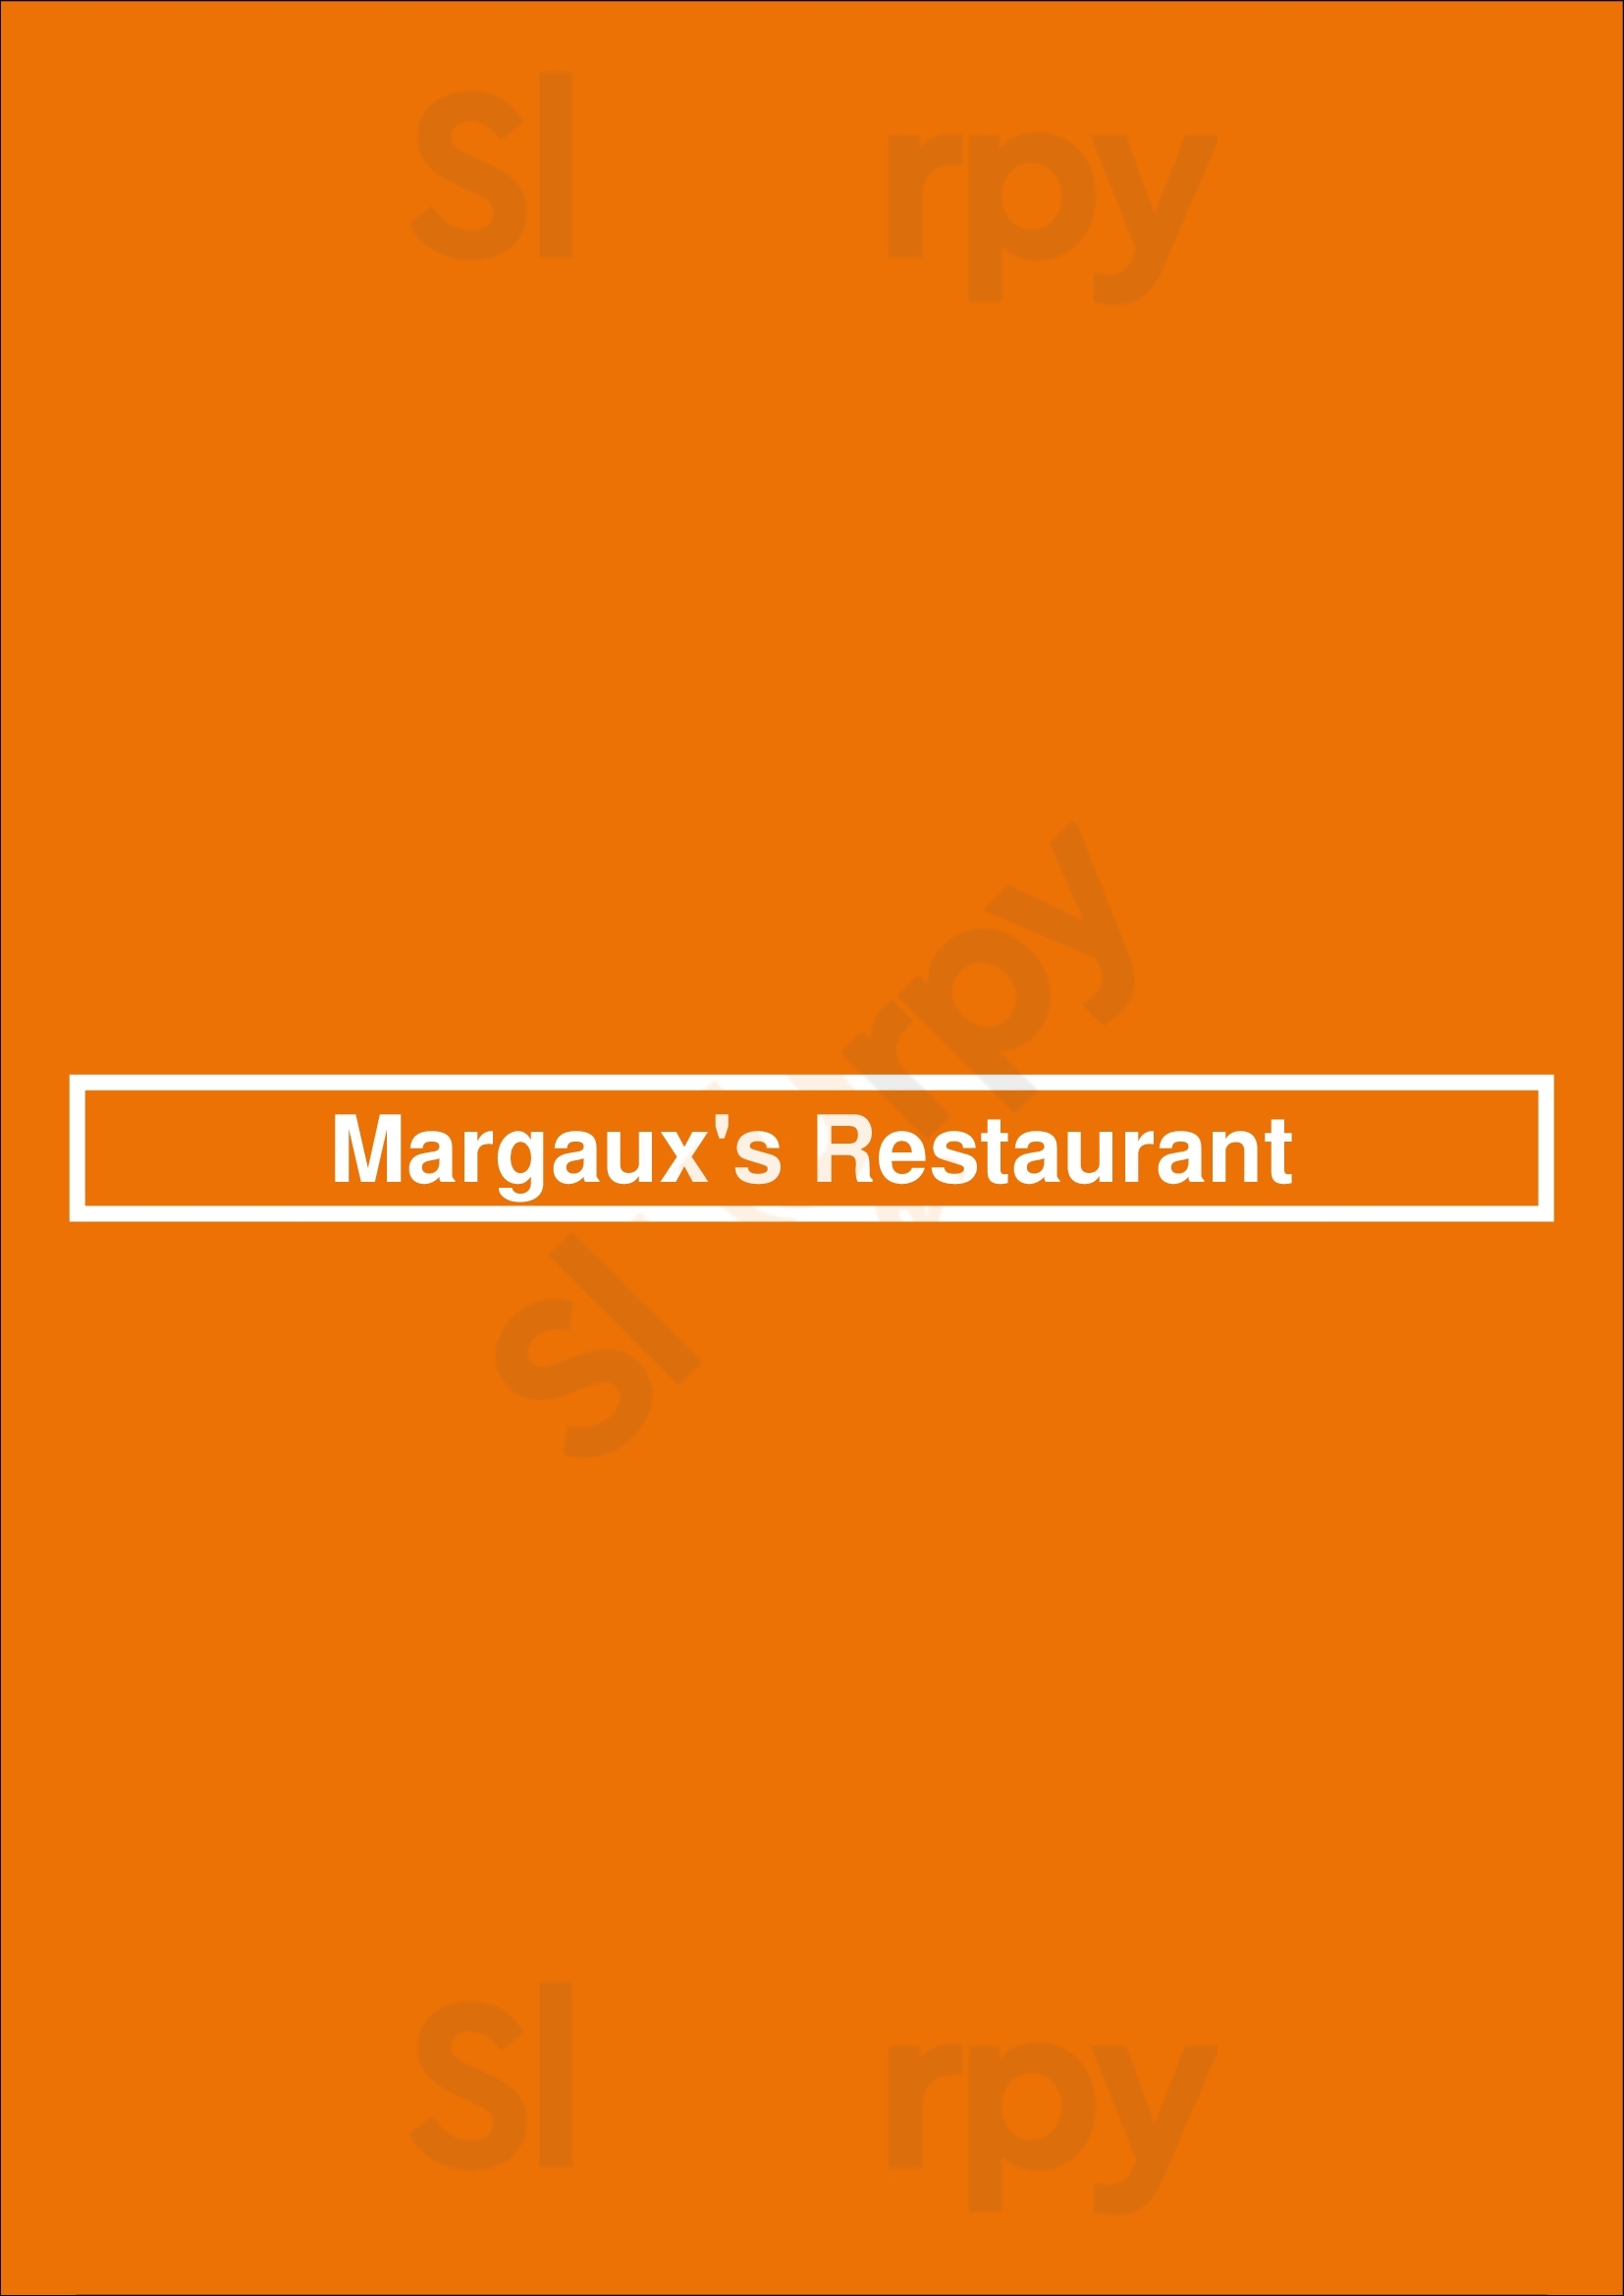 Margaux's Restaurant Raleigh Menu - 1